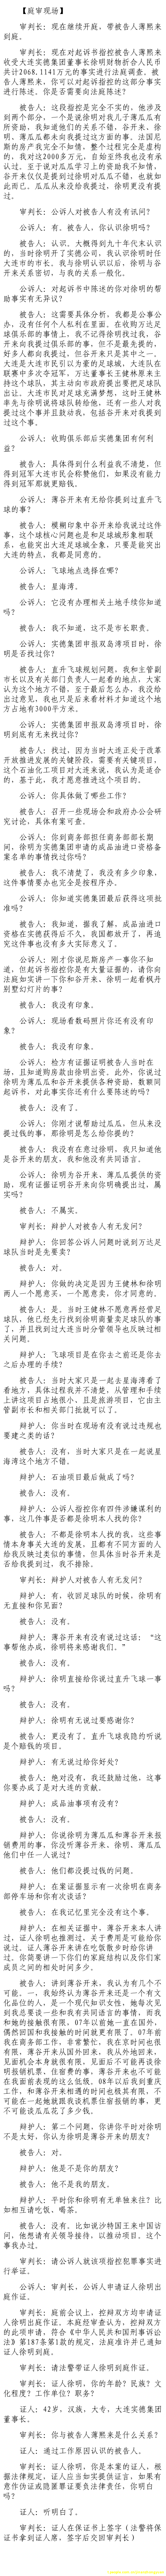 济南市中级法院官方微博公布的8月22日庭审现场记录（6）